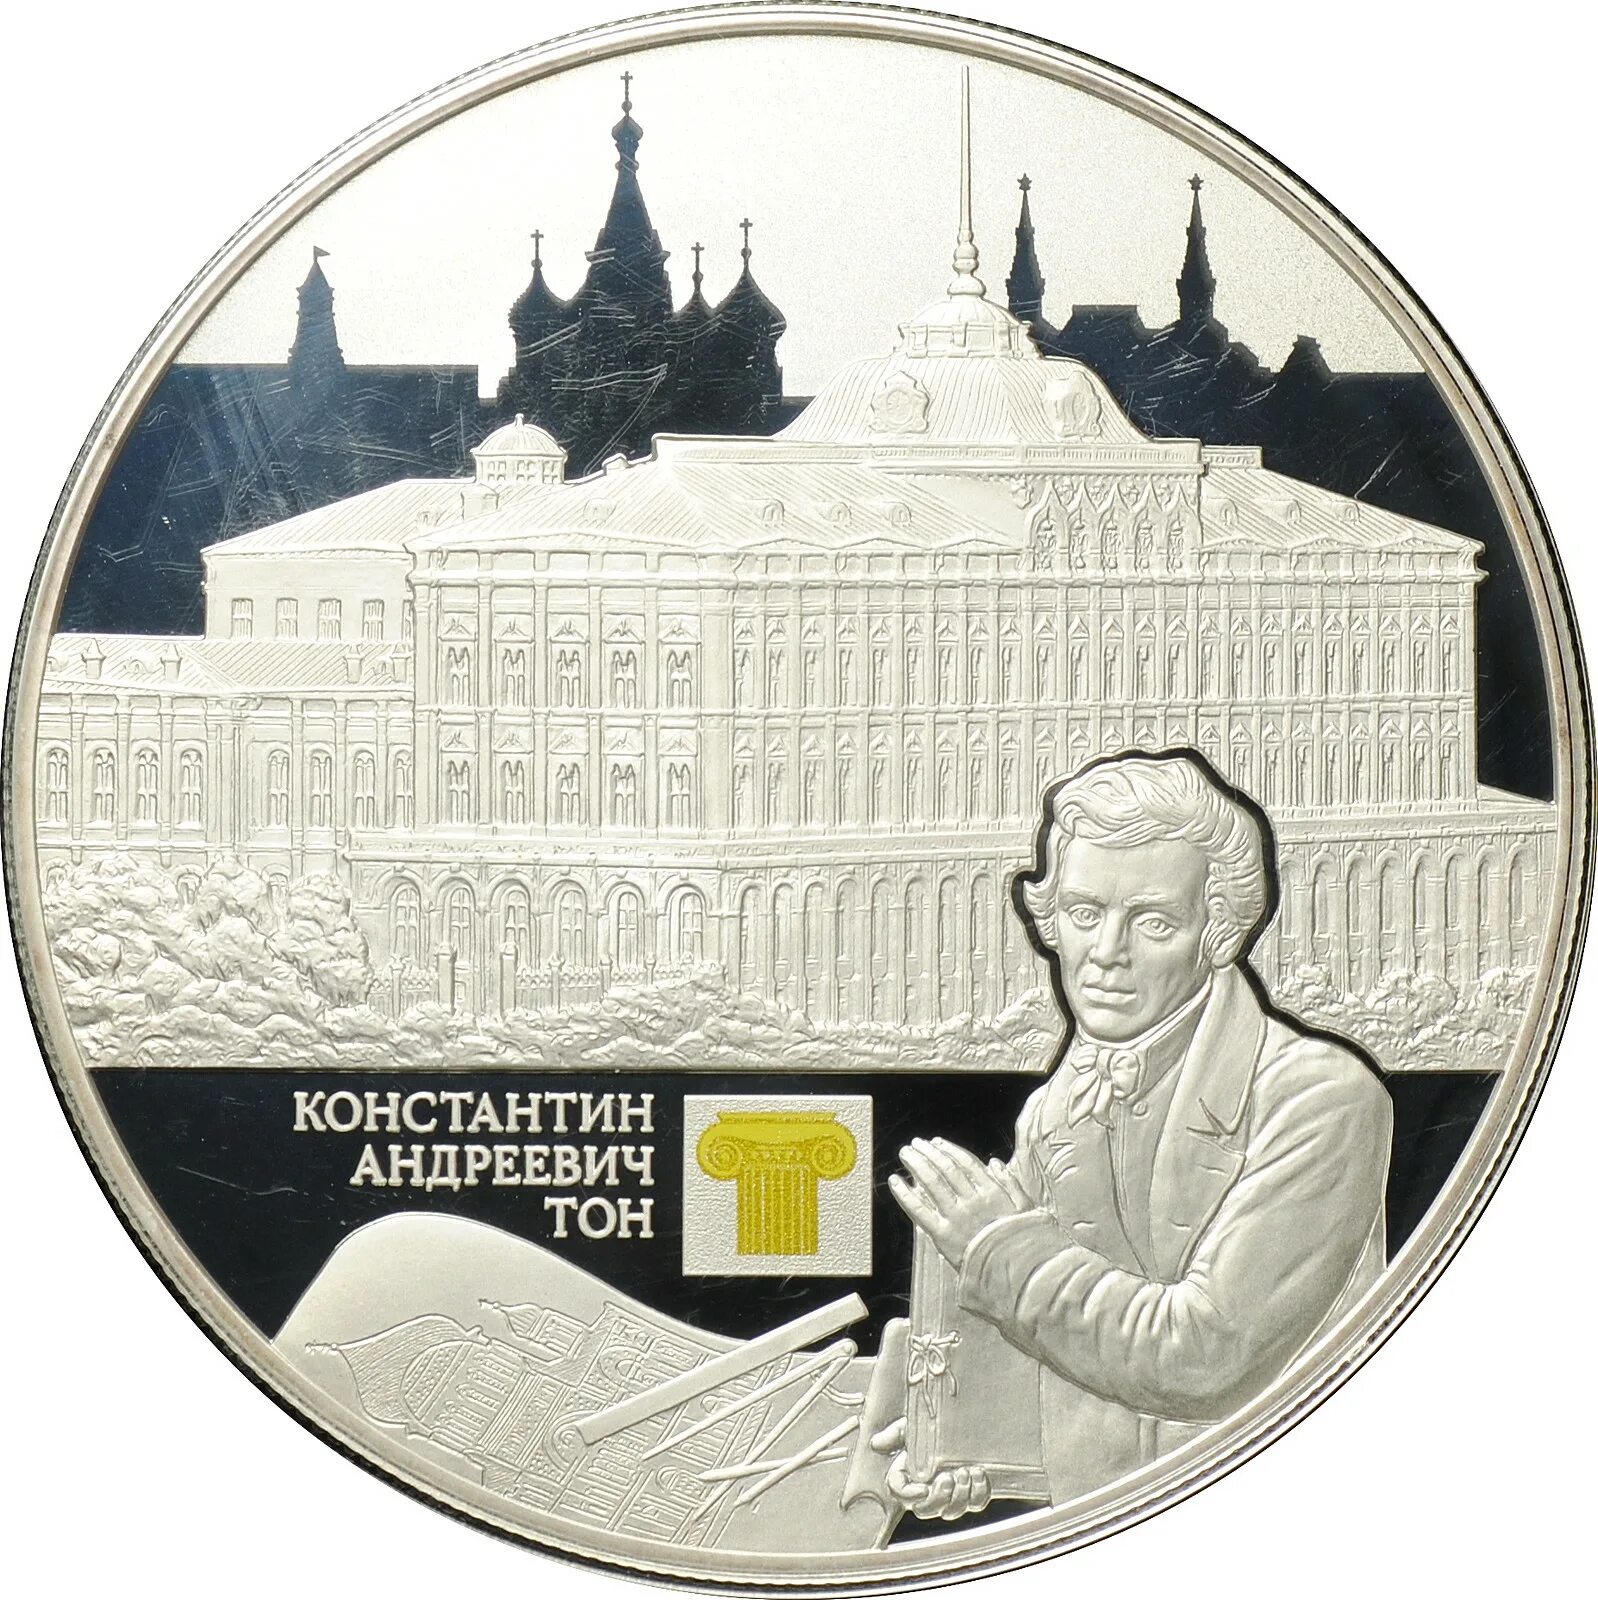 Монета ton. Архитектура на монетах. Архитектурные шедевры России монеты. Монета тон цена